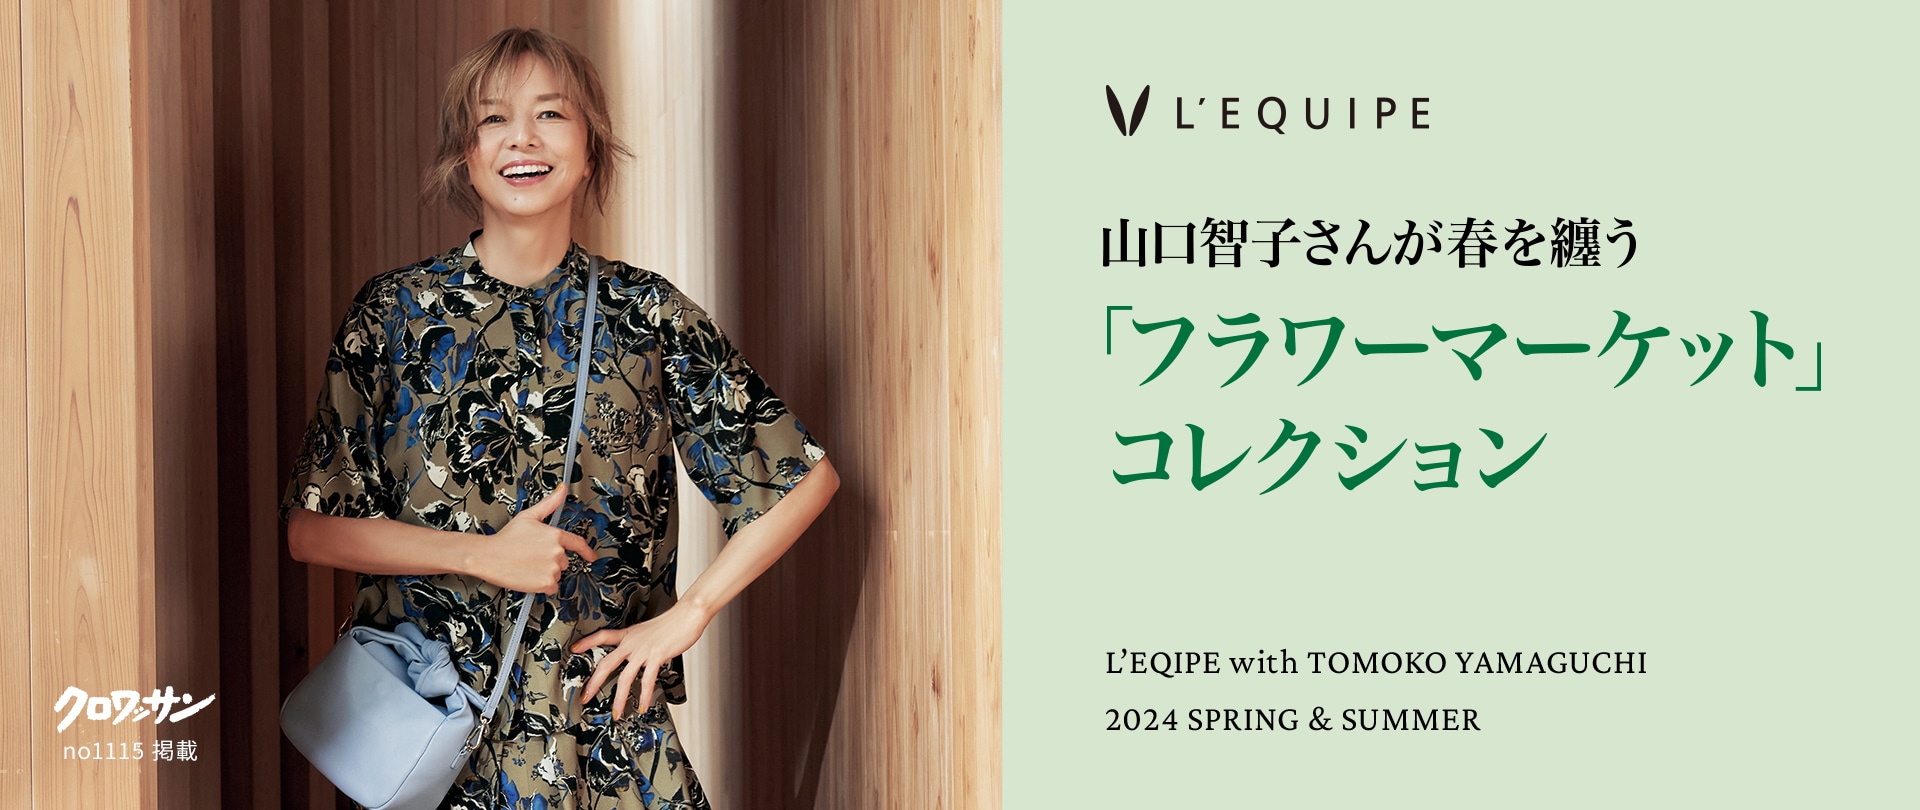 山口智子さんが春を纏う「フラワーマーケット」コレクション